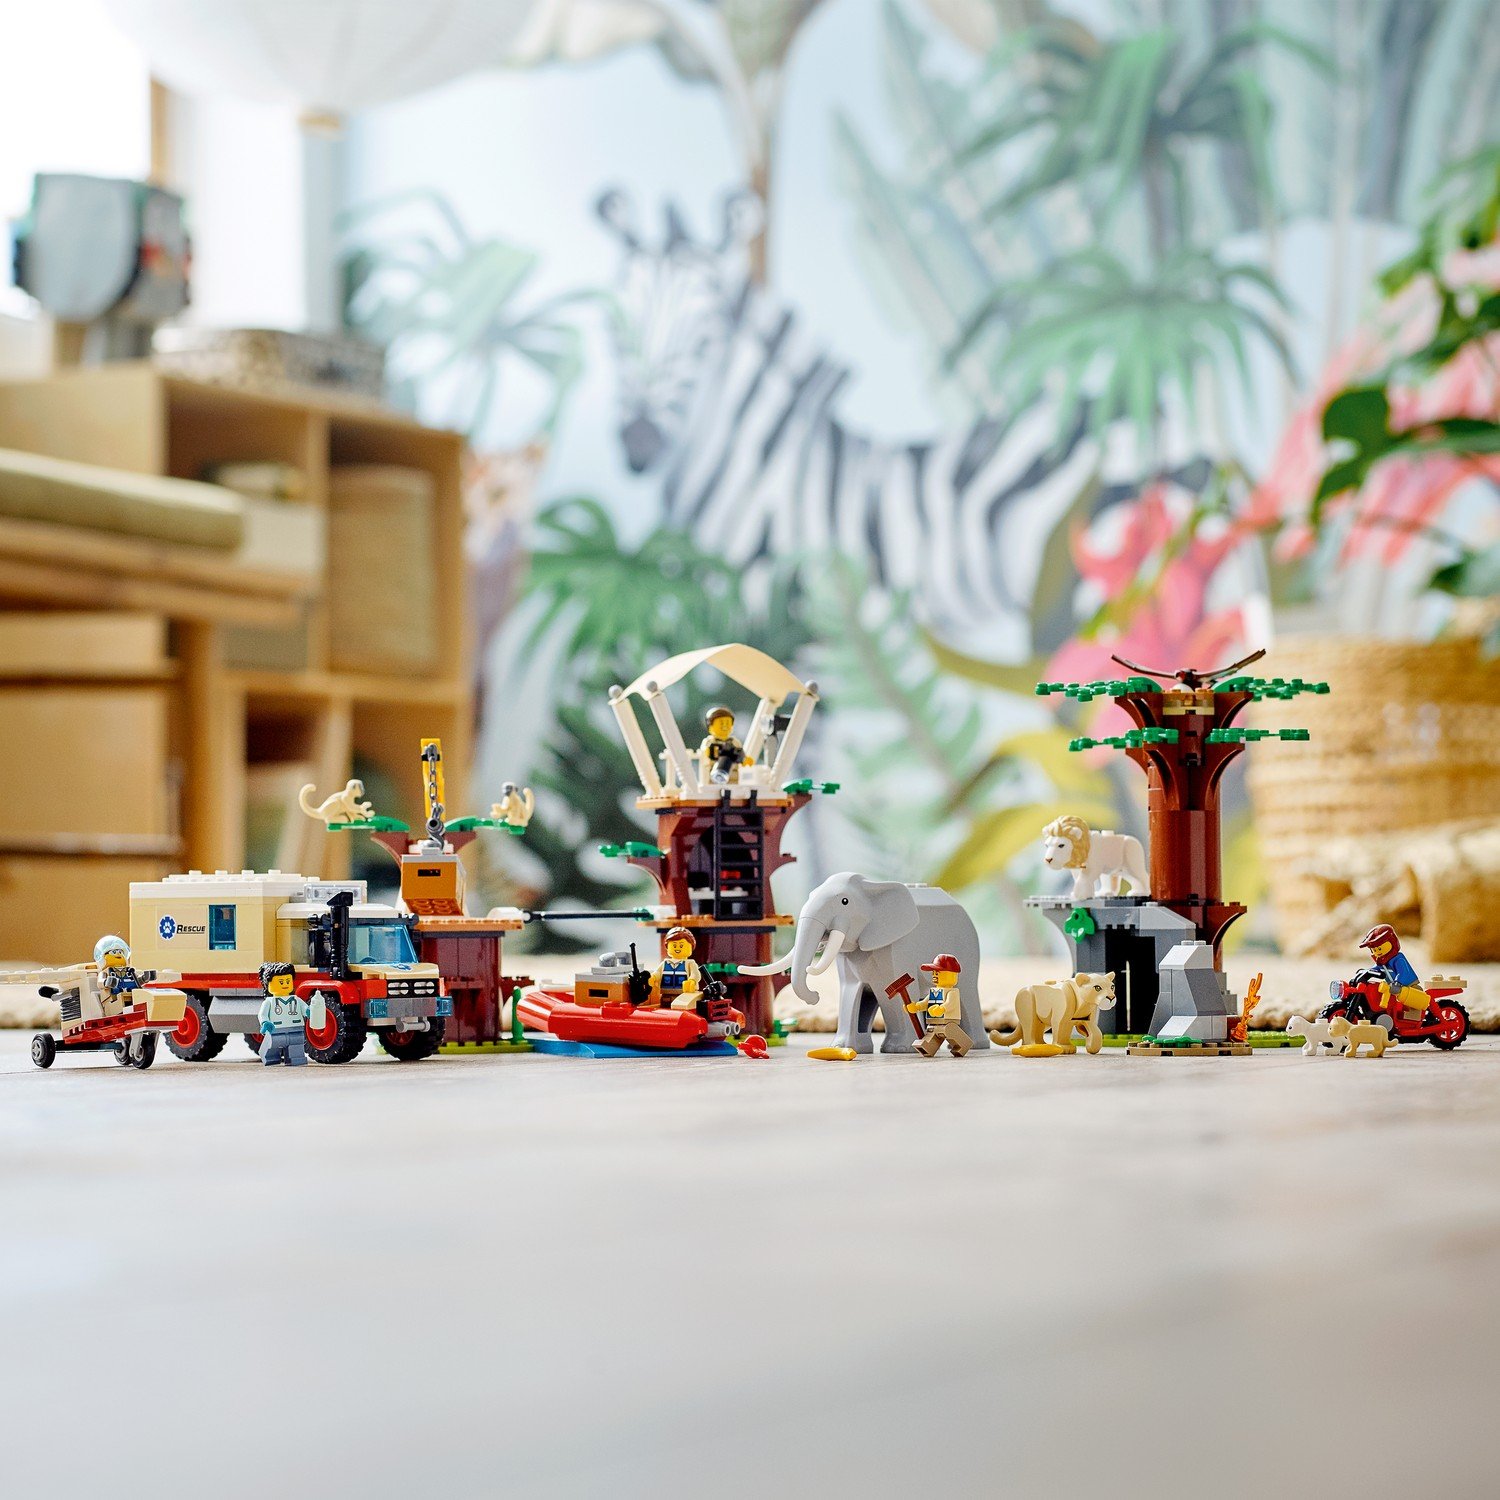 Конструктор LEGO City Лагерь спасения дикой природы 60307